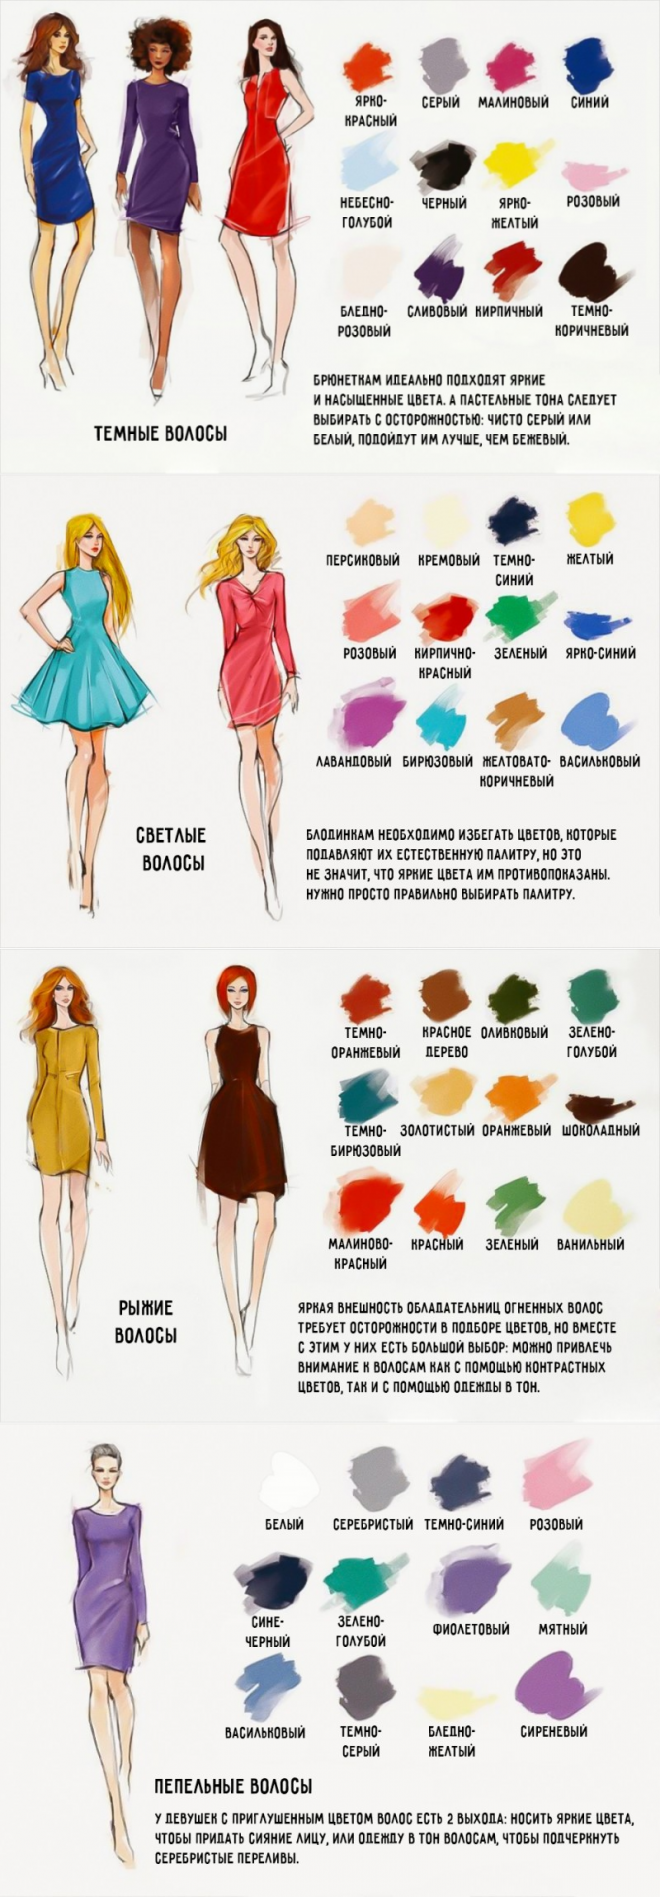 Правила подбора одежды женщинам после 35-40 лет, как создавать элегантный стиль одежды